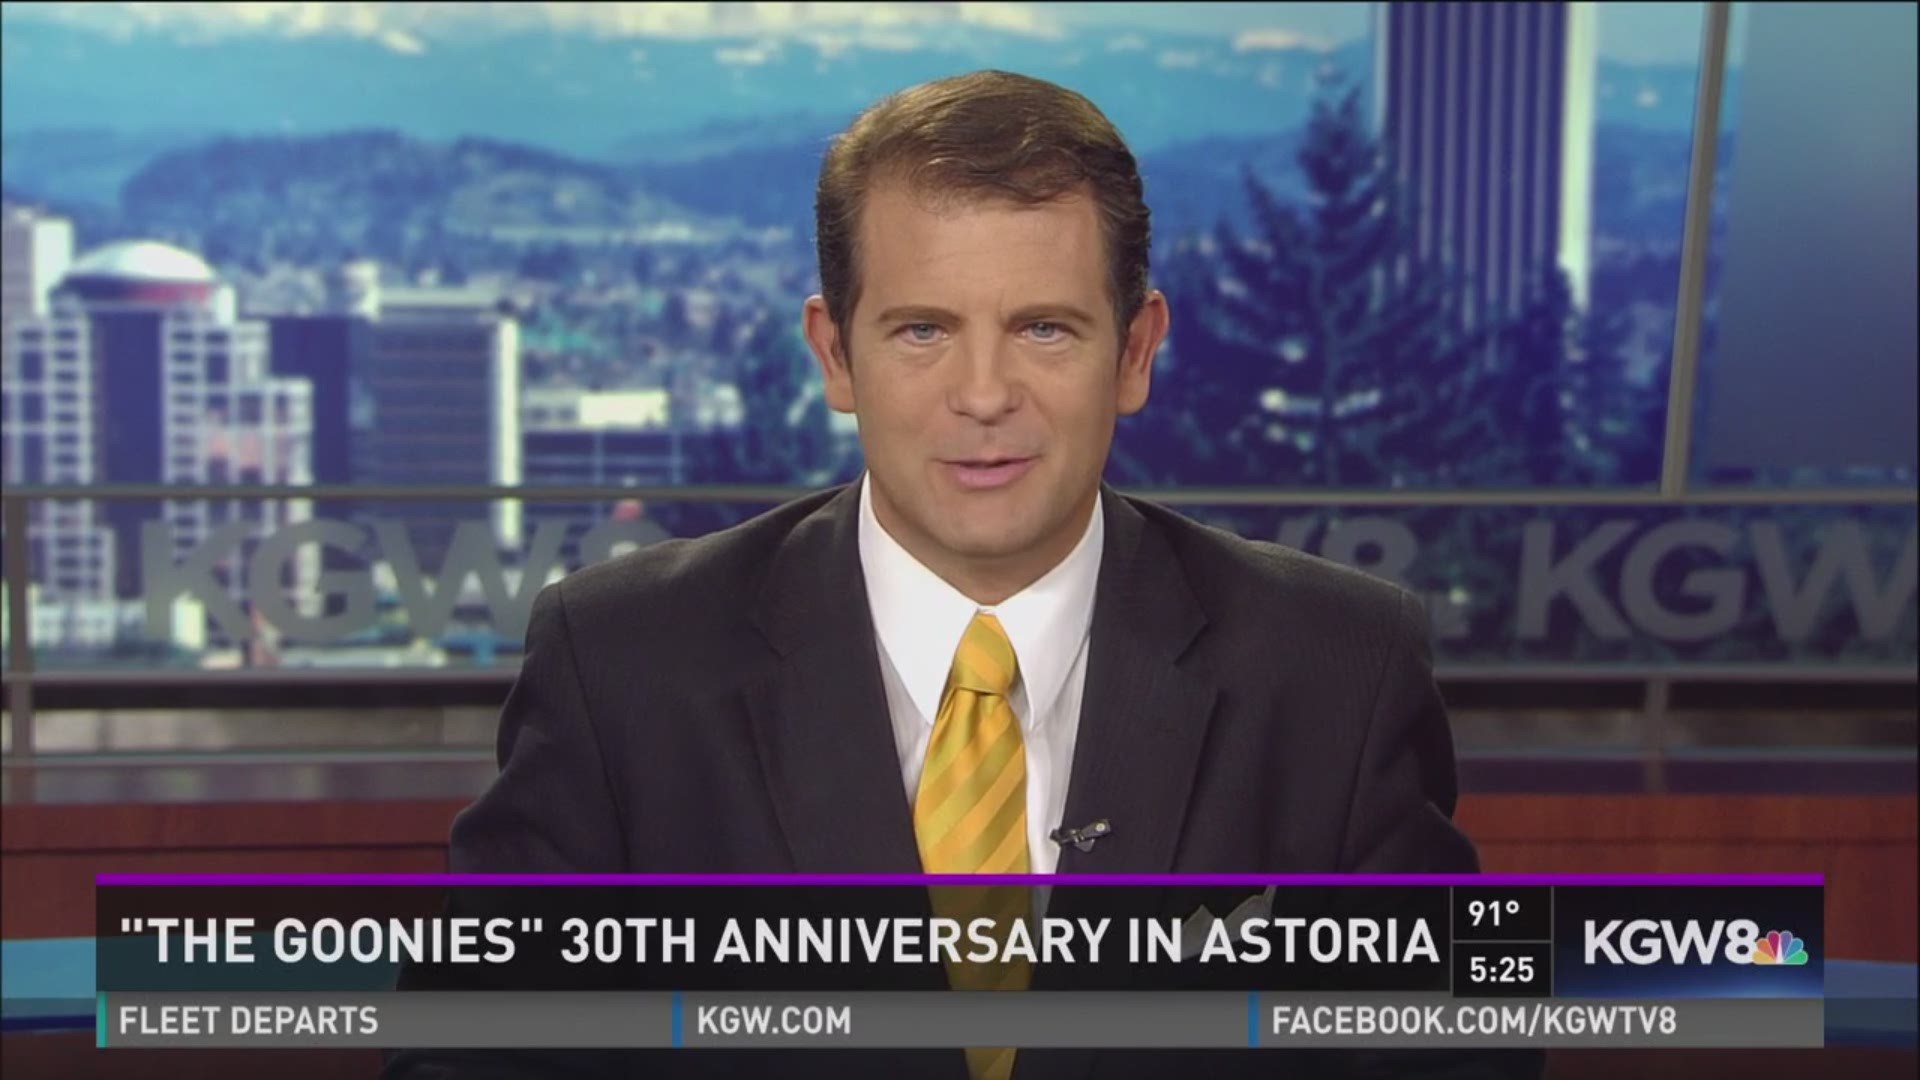 Astoria celebrates 30th anniversary...